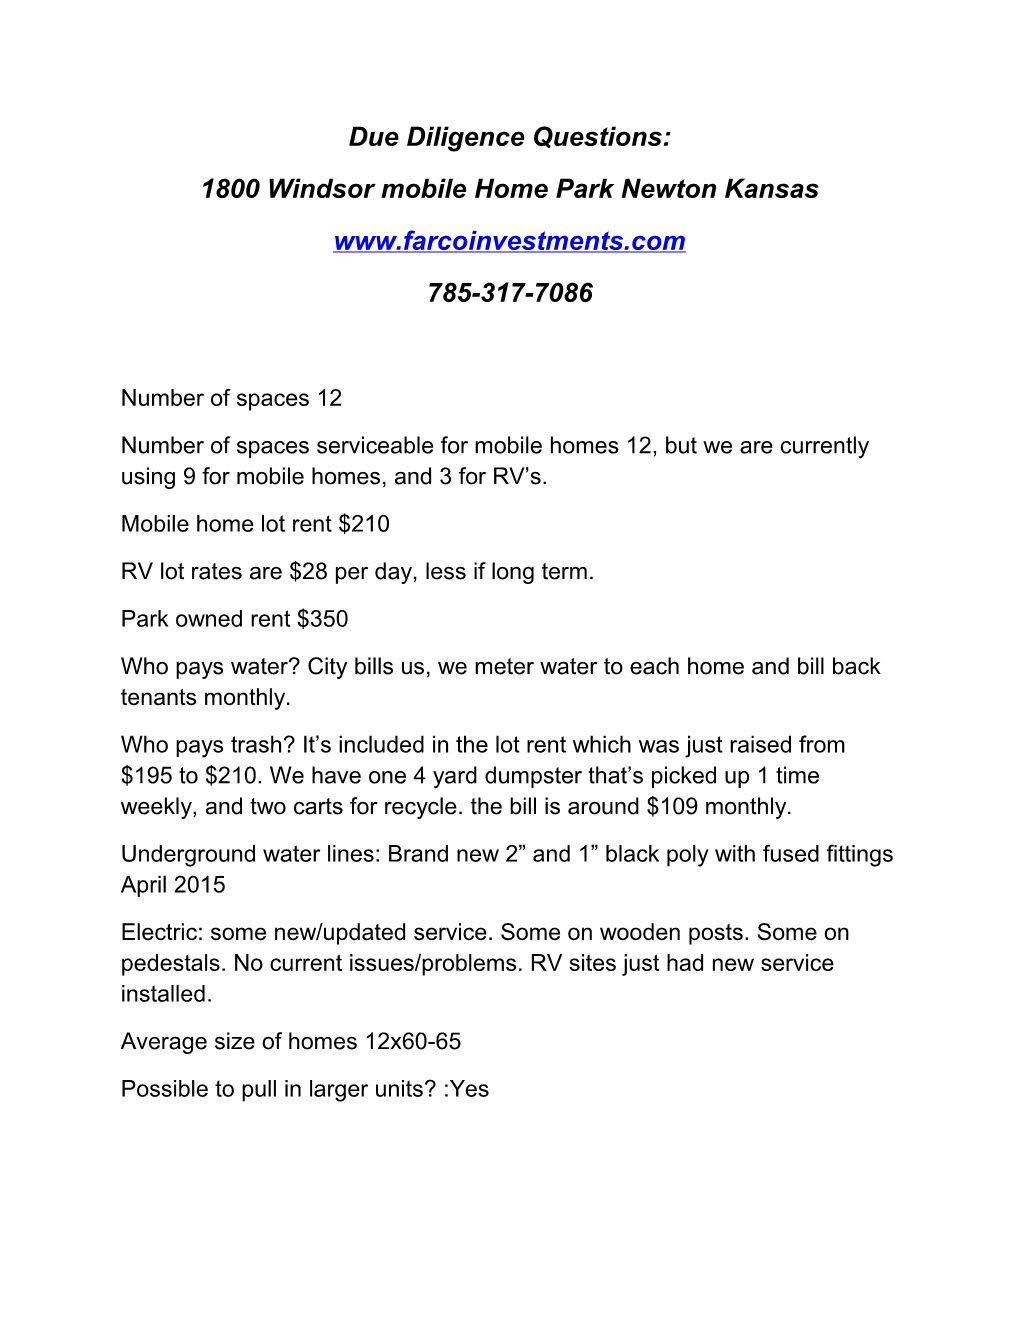 1800 Windsor Mobile Home Park Newton Kansas